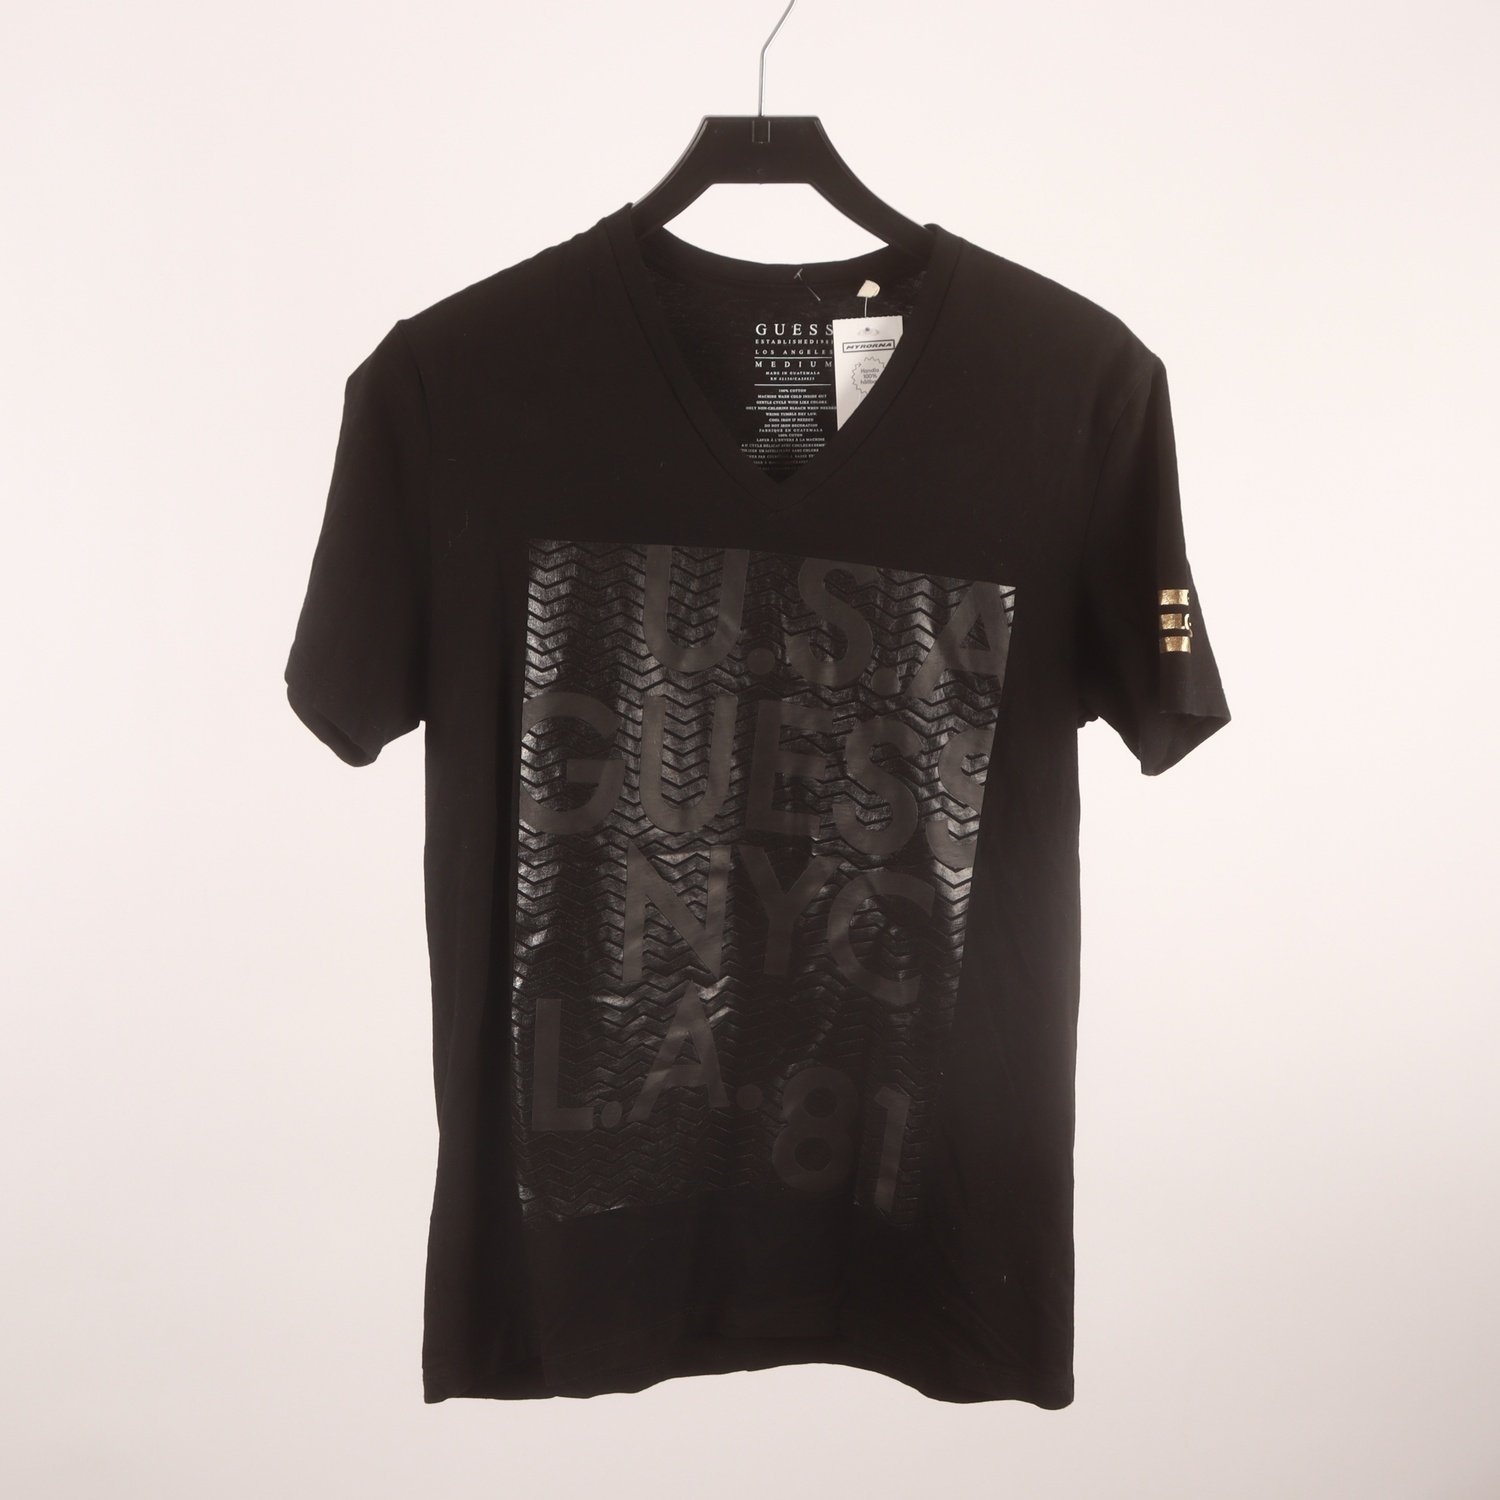 T-shirt, Guess, svart, stl. M